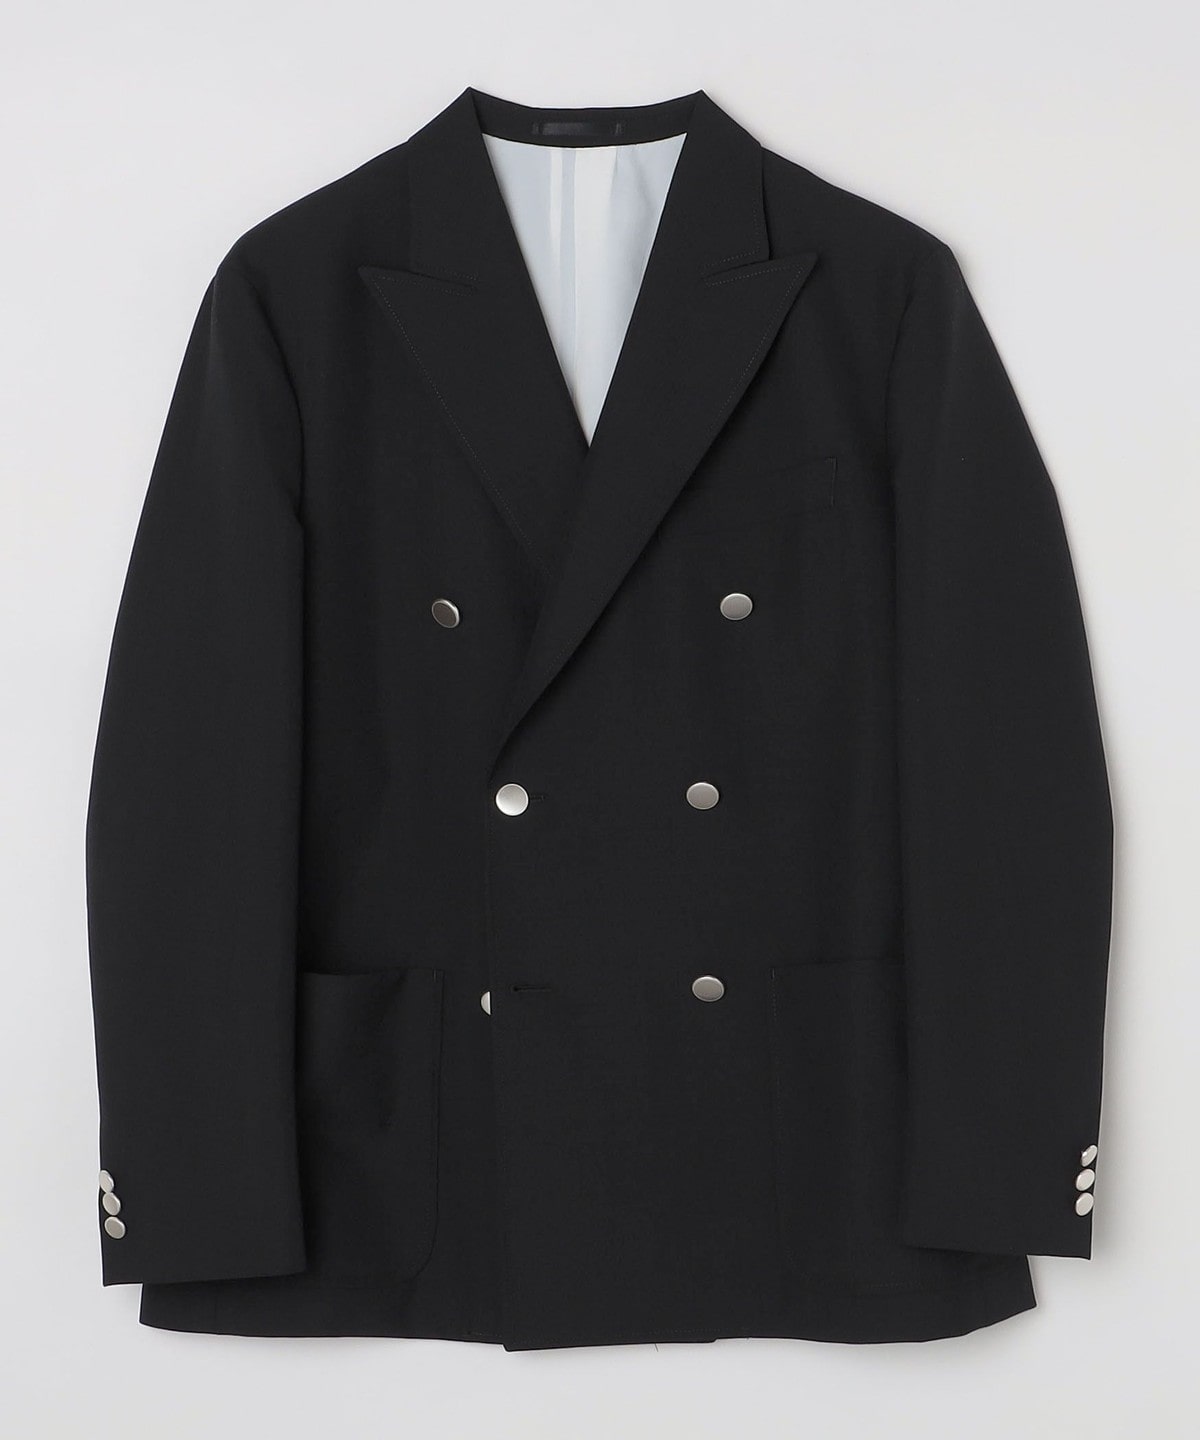 【Vintage】ウール混紡 ダブルブレスト テーラードジャケット 光沢 黒